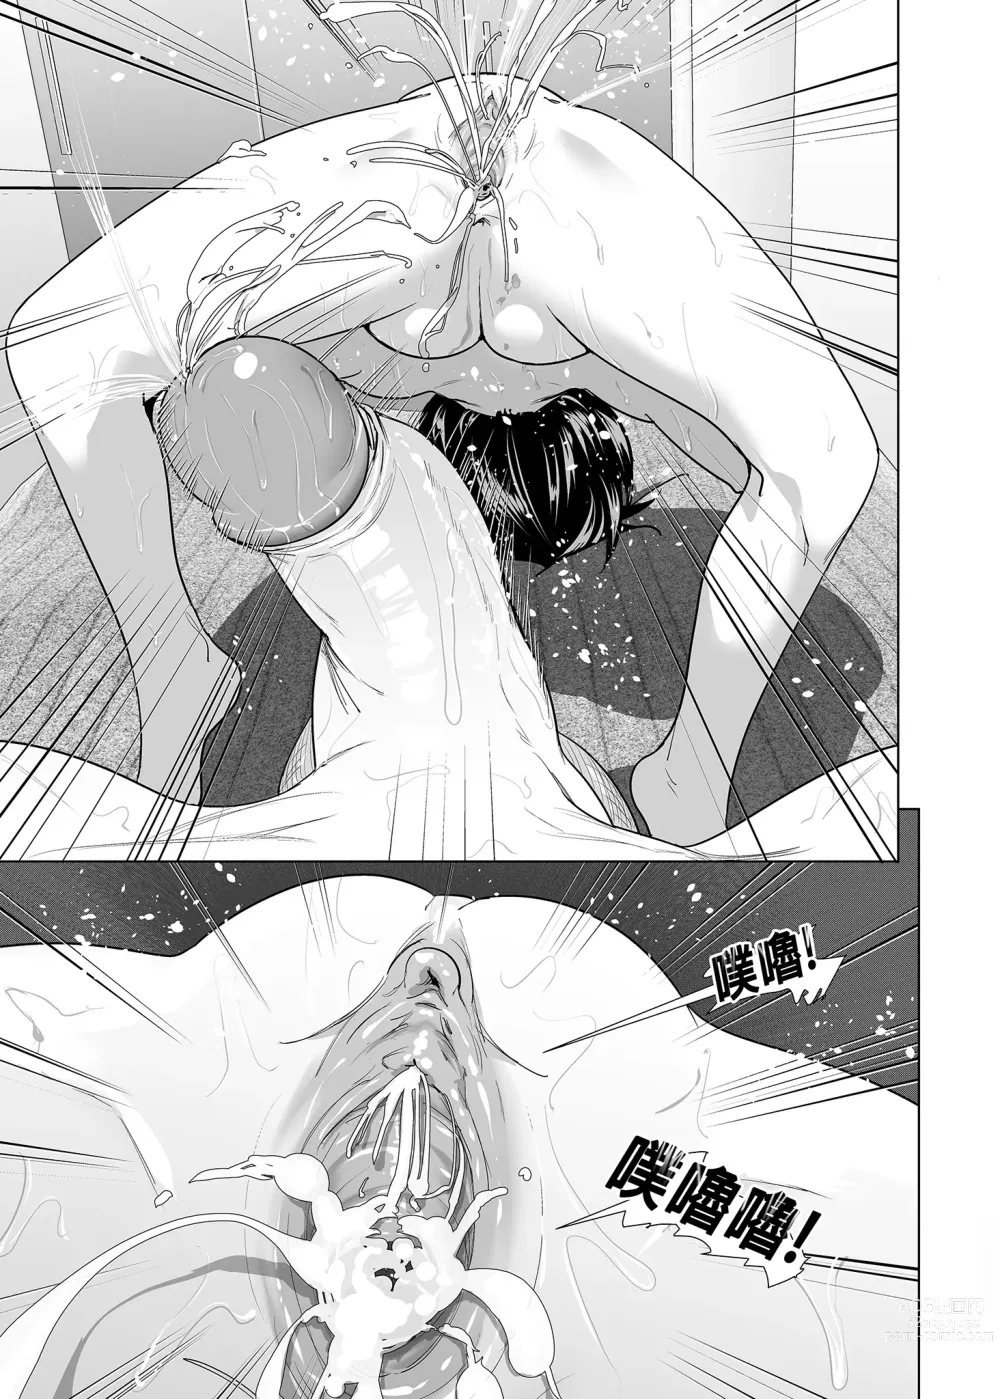 Page 90 of doujinshi 關於妹妹胸部 整顆露出來的那件事 總集篇1 (decensored)